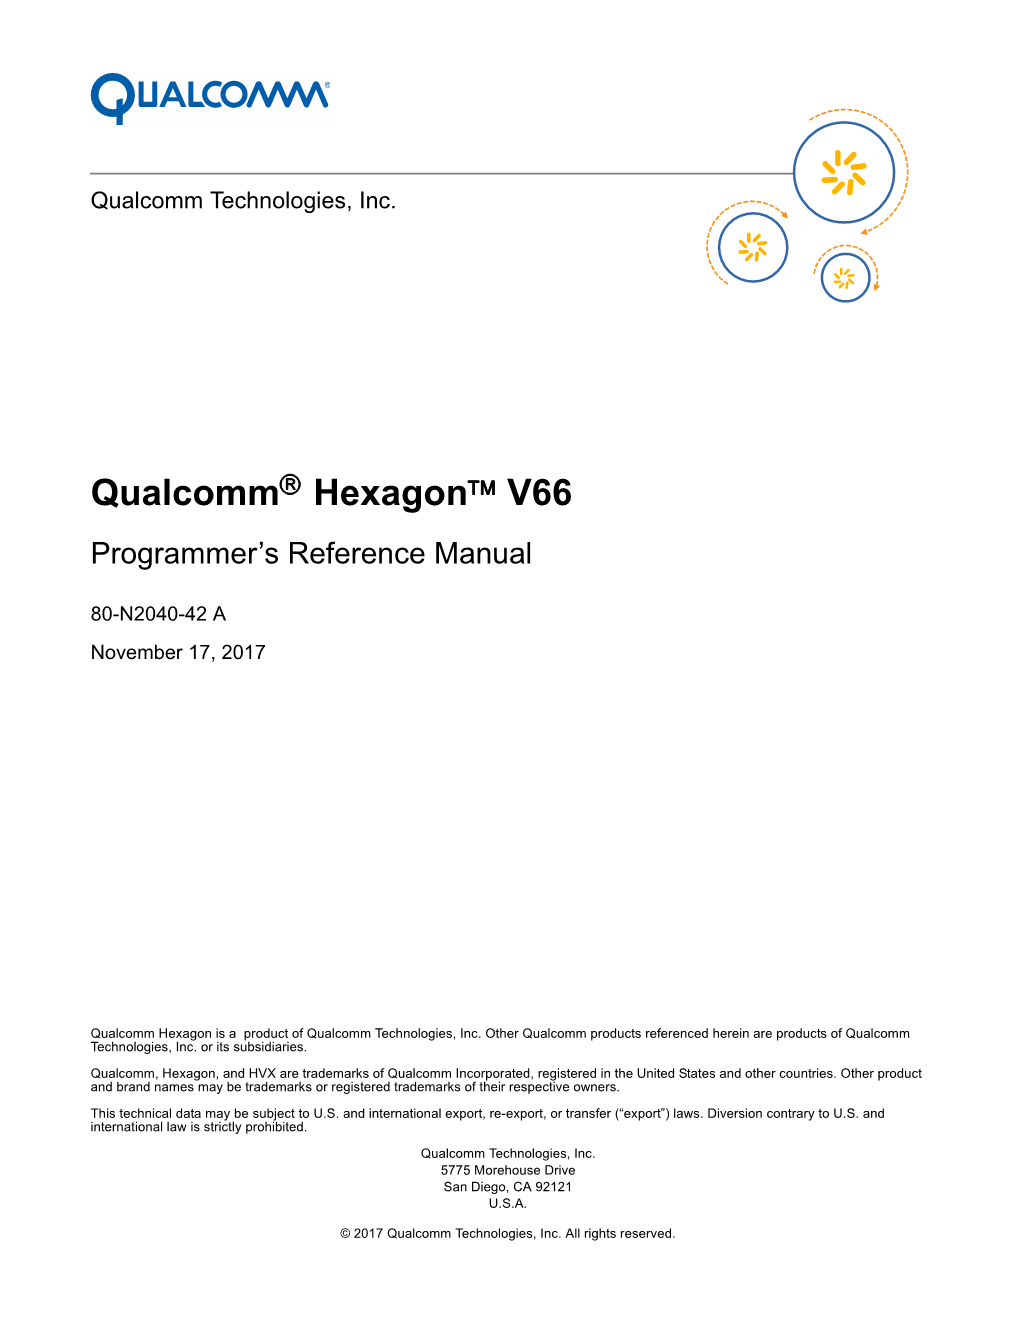 Qualcomm Hexagon V66 Programmer's Reference Manual